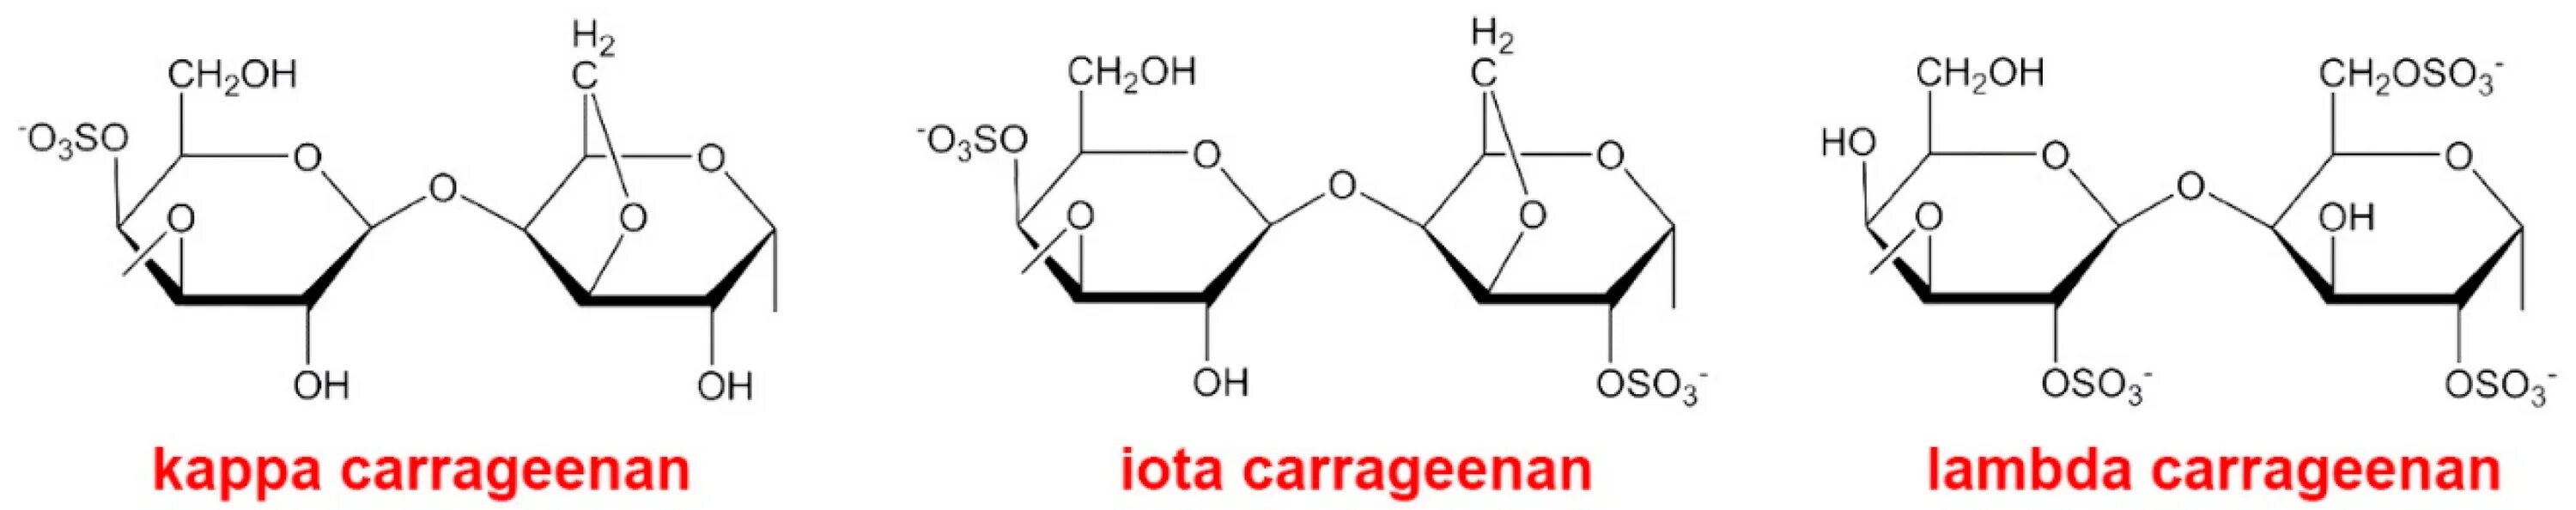 Каппа каррагинан формула. Каппа каррагинан химическая формула. Каррагинан формула. Каррагинан строение. Йота каррагинан